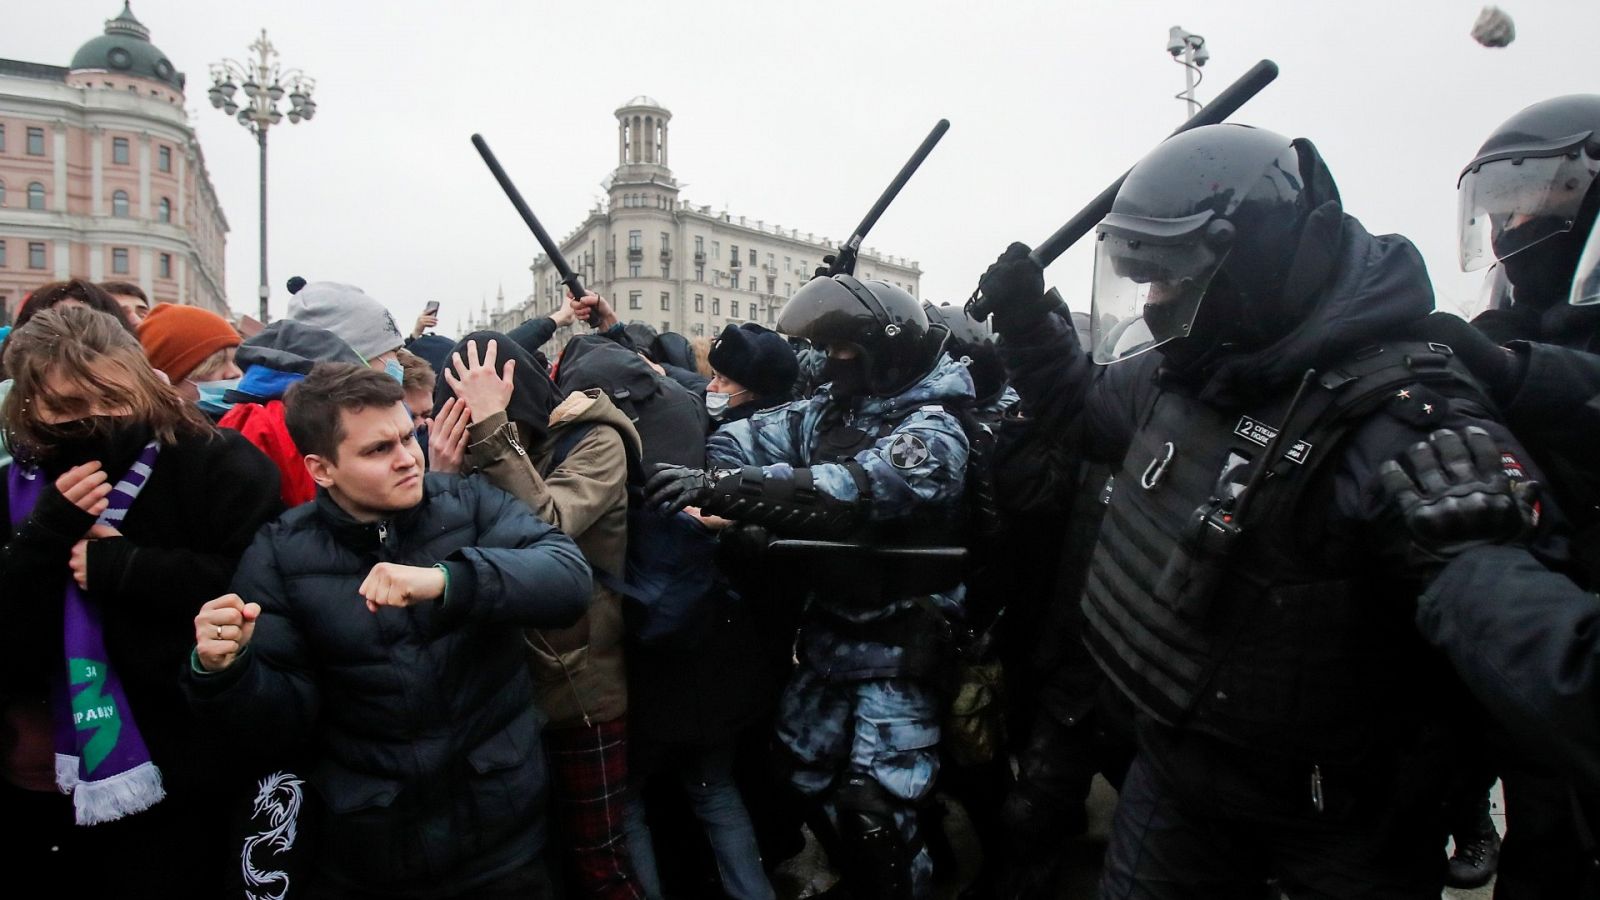 Detenciones masivas en Rusia en las manifestaciones de apoyo al opositor Navalny convocadas en ciudades de todo el país